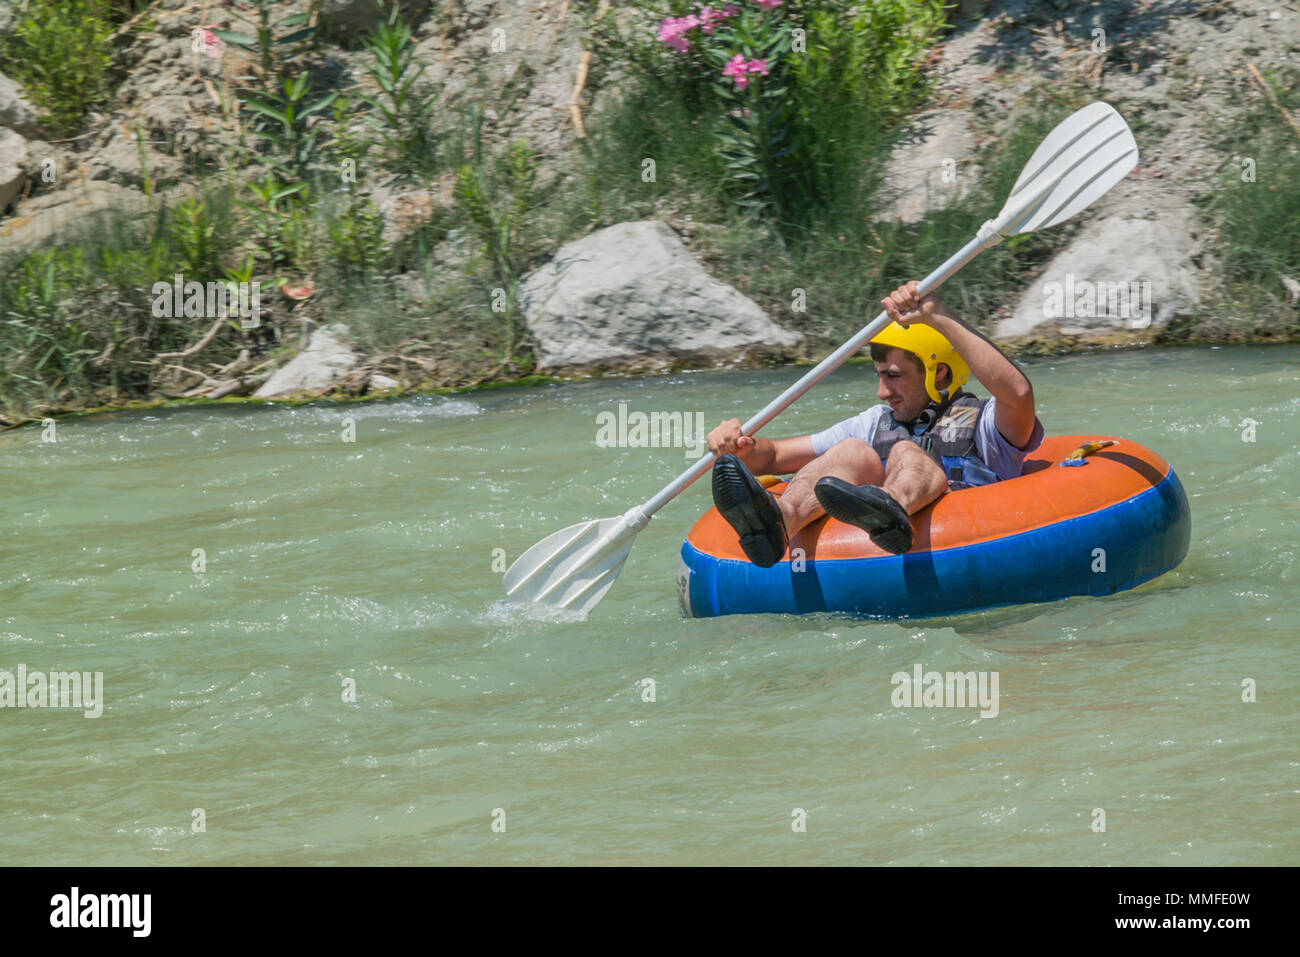 River Tubing a saklikent FETHIYE Turchia, saklikentte rafting Foto Stock